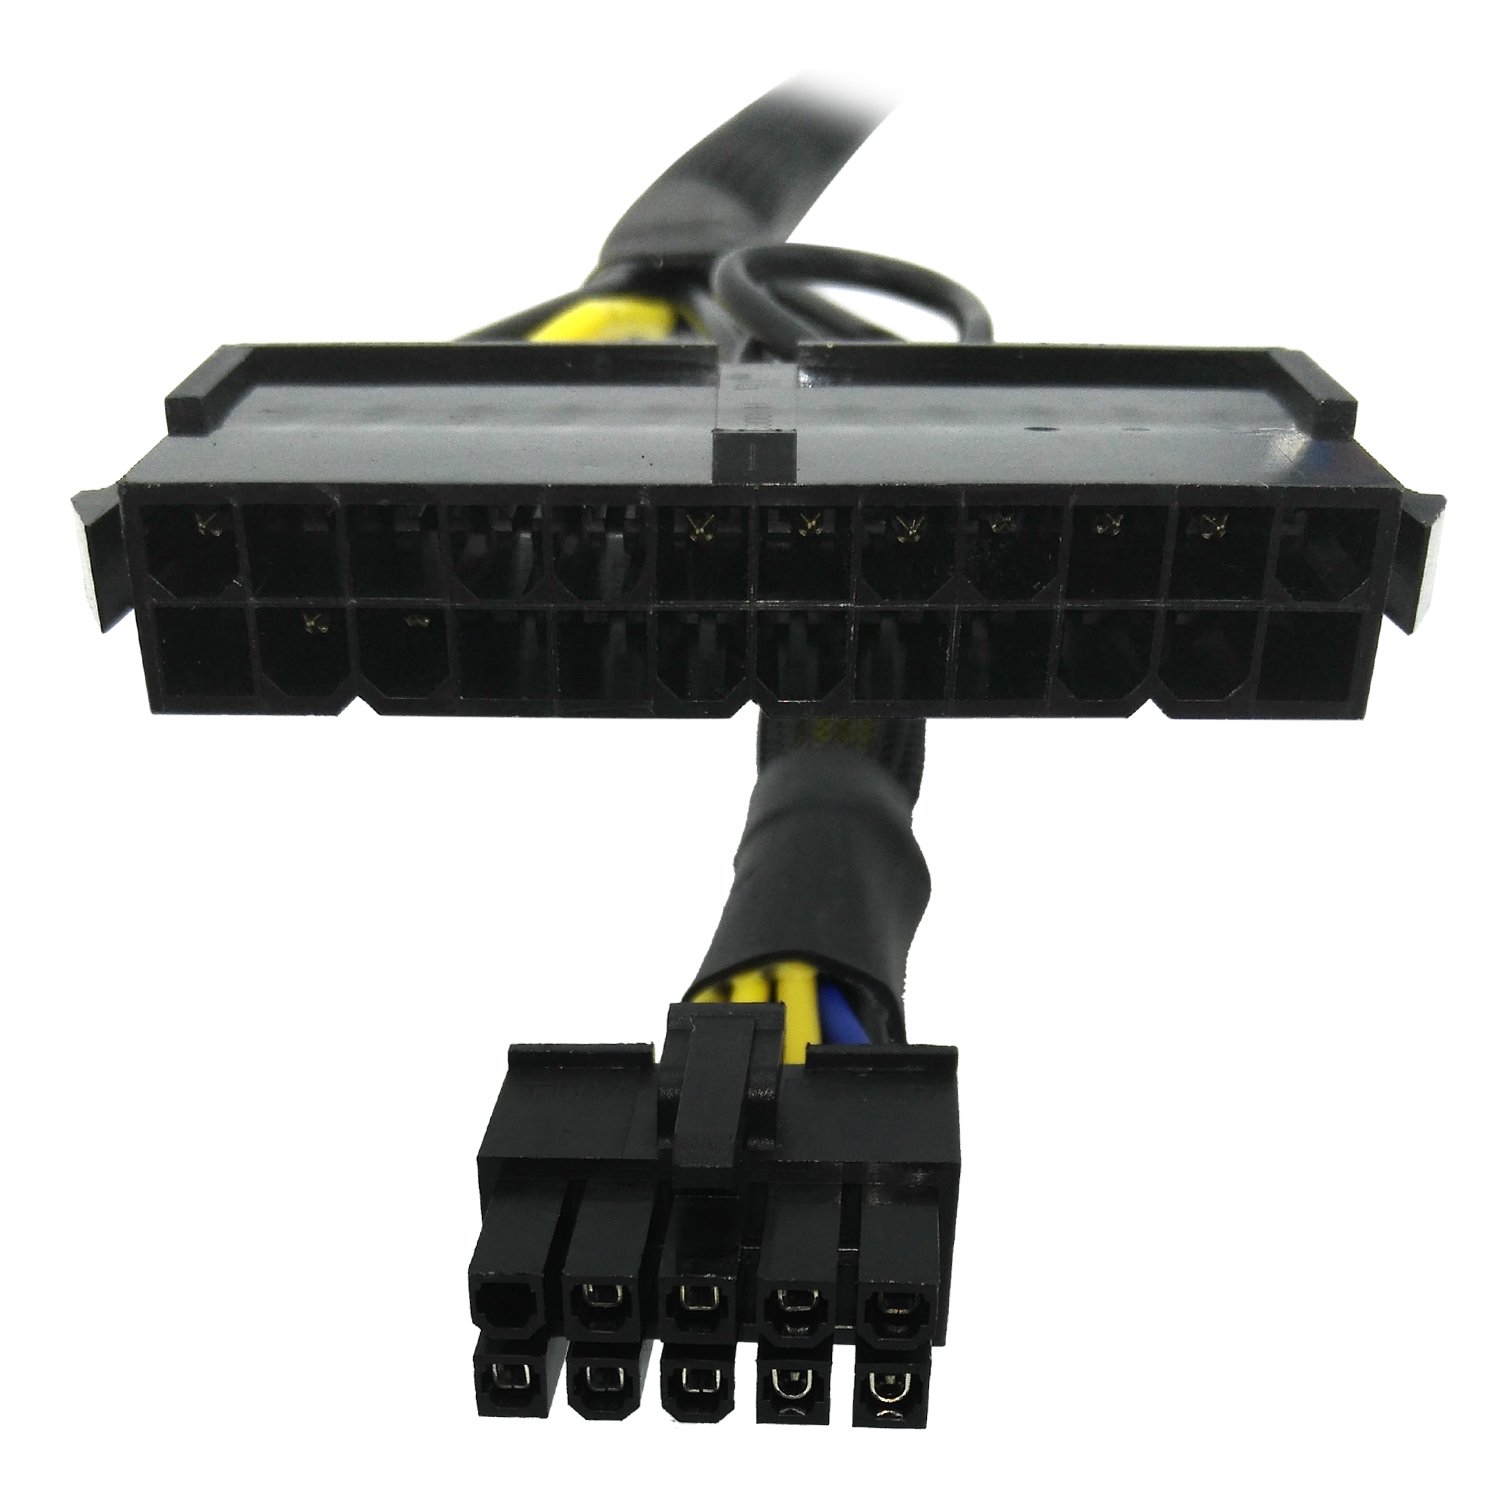 1pcs 24 Pin to 12 Pin PSU Main Power Supply ATX Adapter Cable for Lenovo IBM Kd